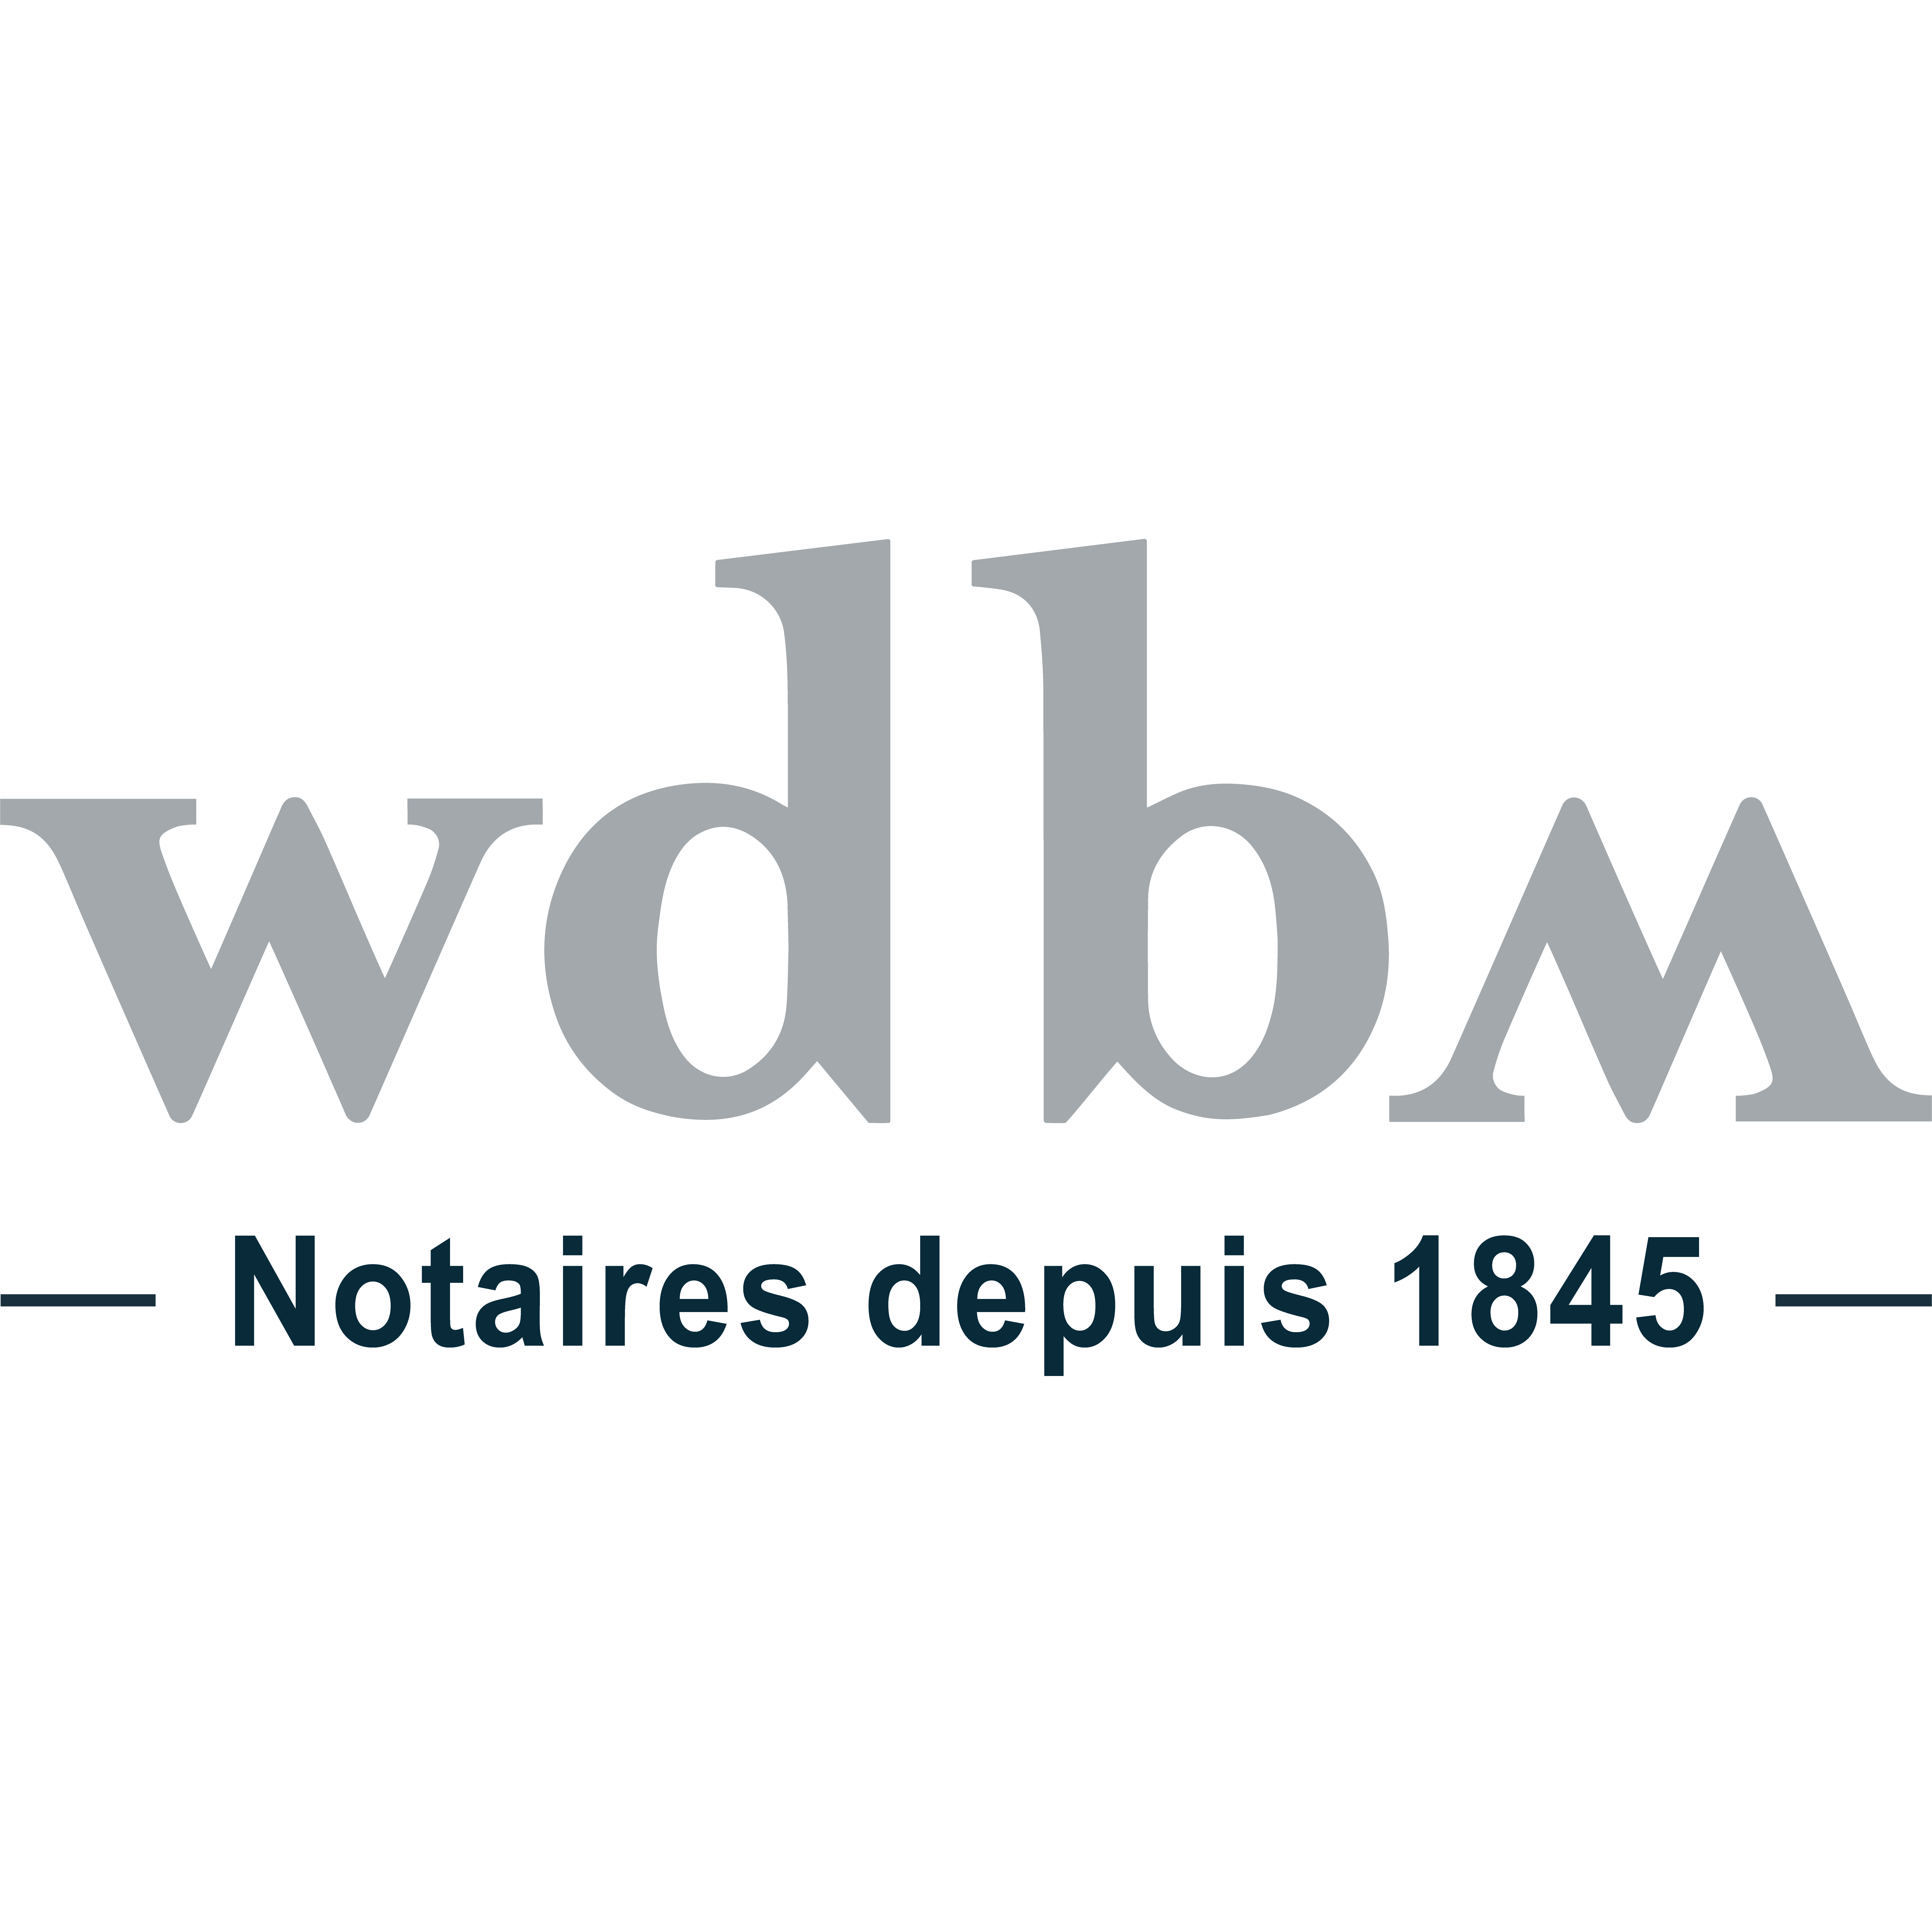 Etude WICHT BONNEFOUS MICHEL - WBM Notaires Logo